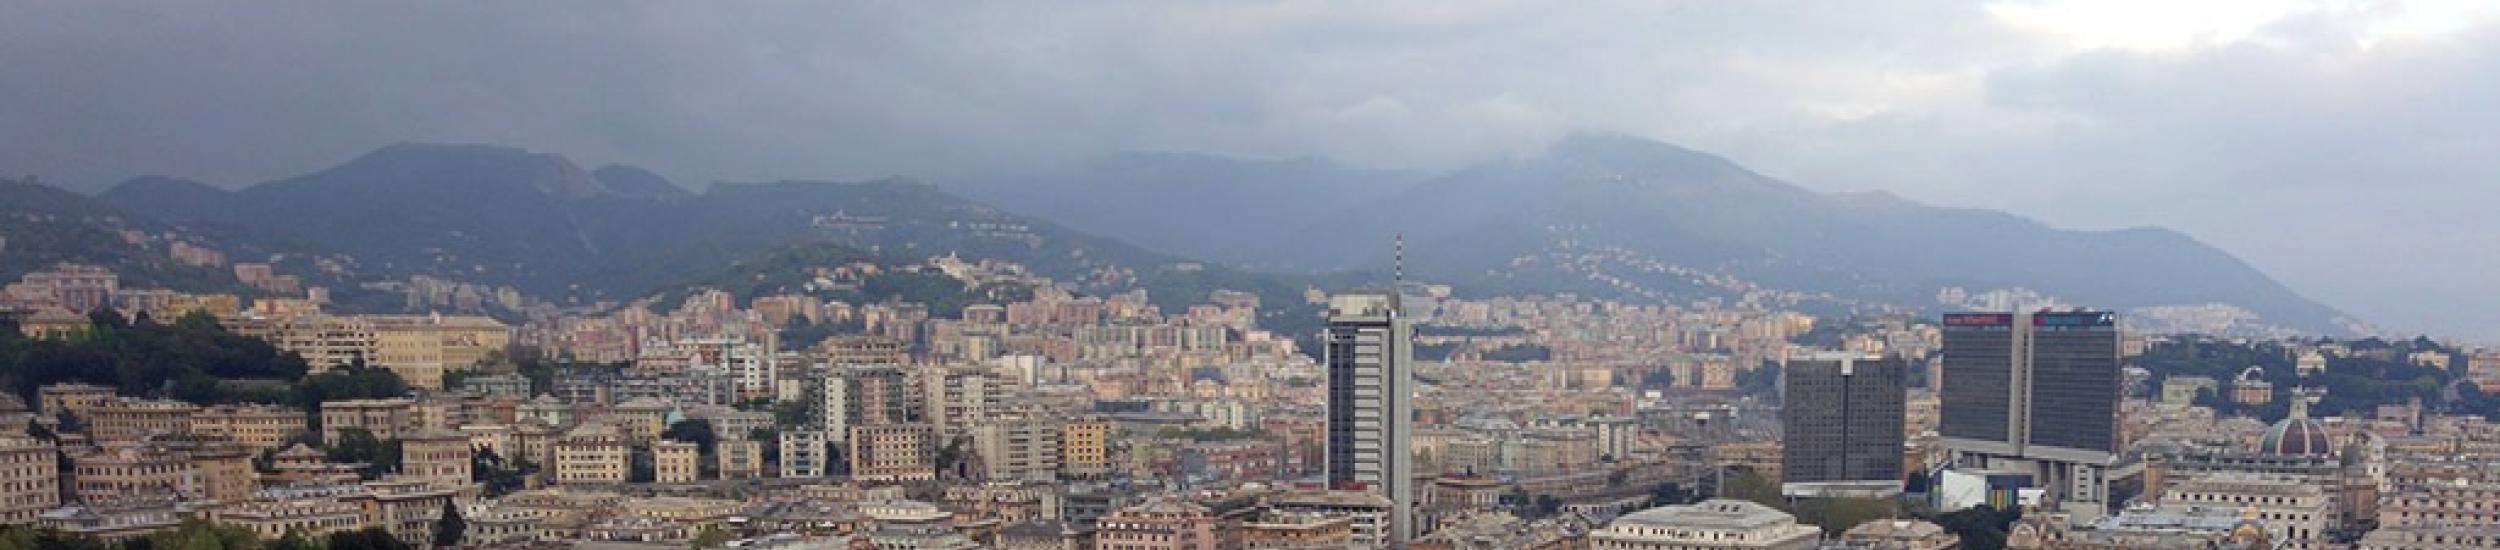 Aria, più nuvole che smog nella città metropolitana di genova (news del 2016-05-31 10:10:17)